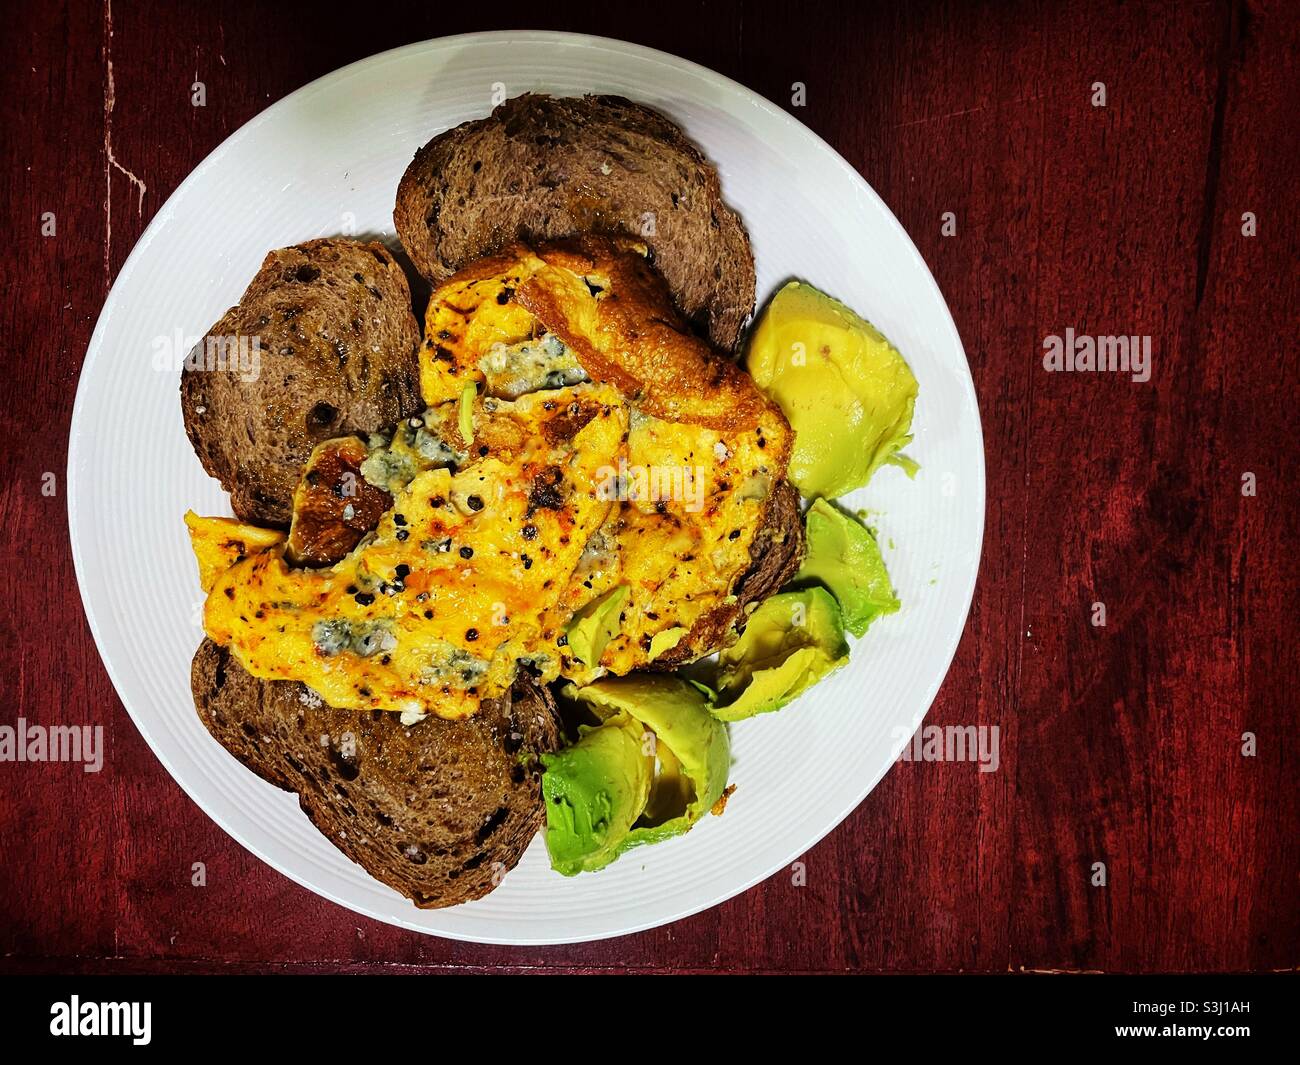 Misto di sheesh e omelette al peperoncino su brindisi bruno con avocado Foto Stock